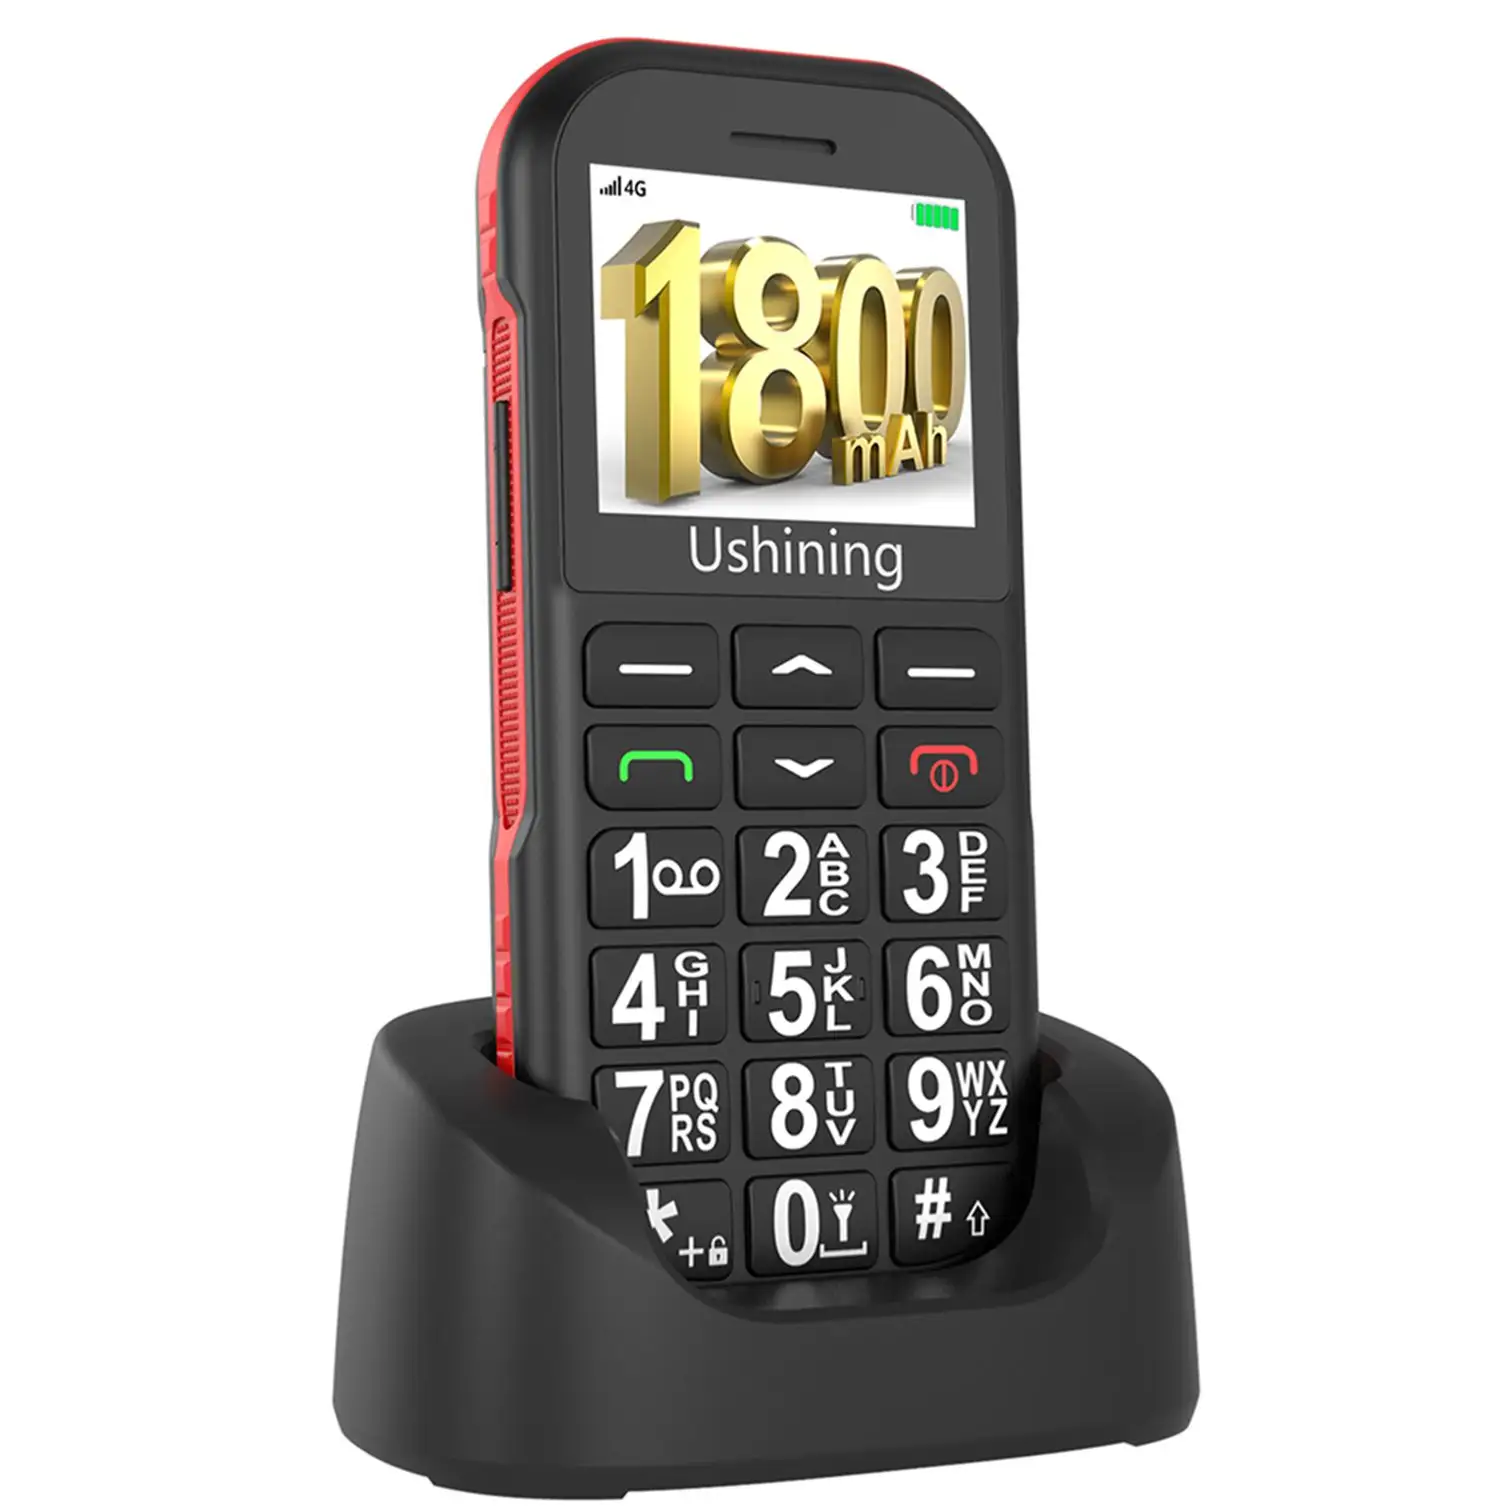 La migliore vendita di origine del telefono cellulare Senior 4G grande batteria grande pulsante 1.8 pollici schermo cellulare con pulsante SOS per gli anziani